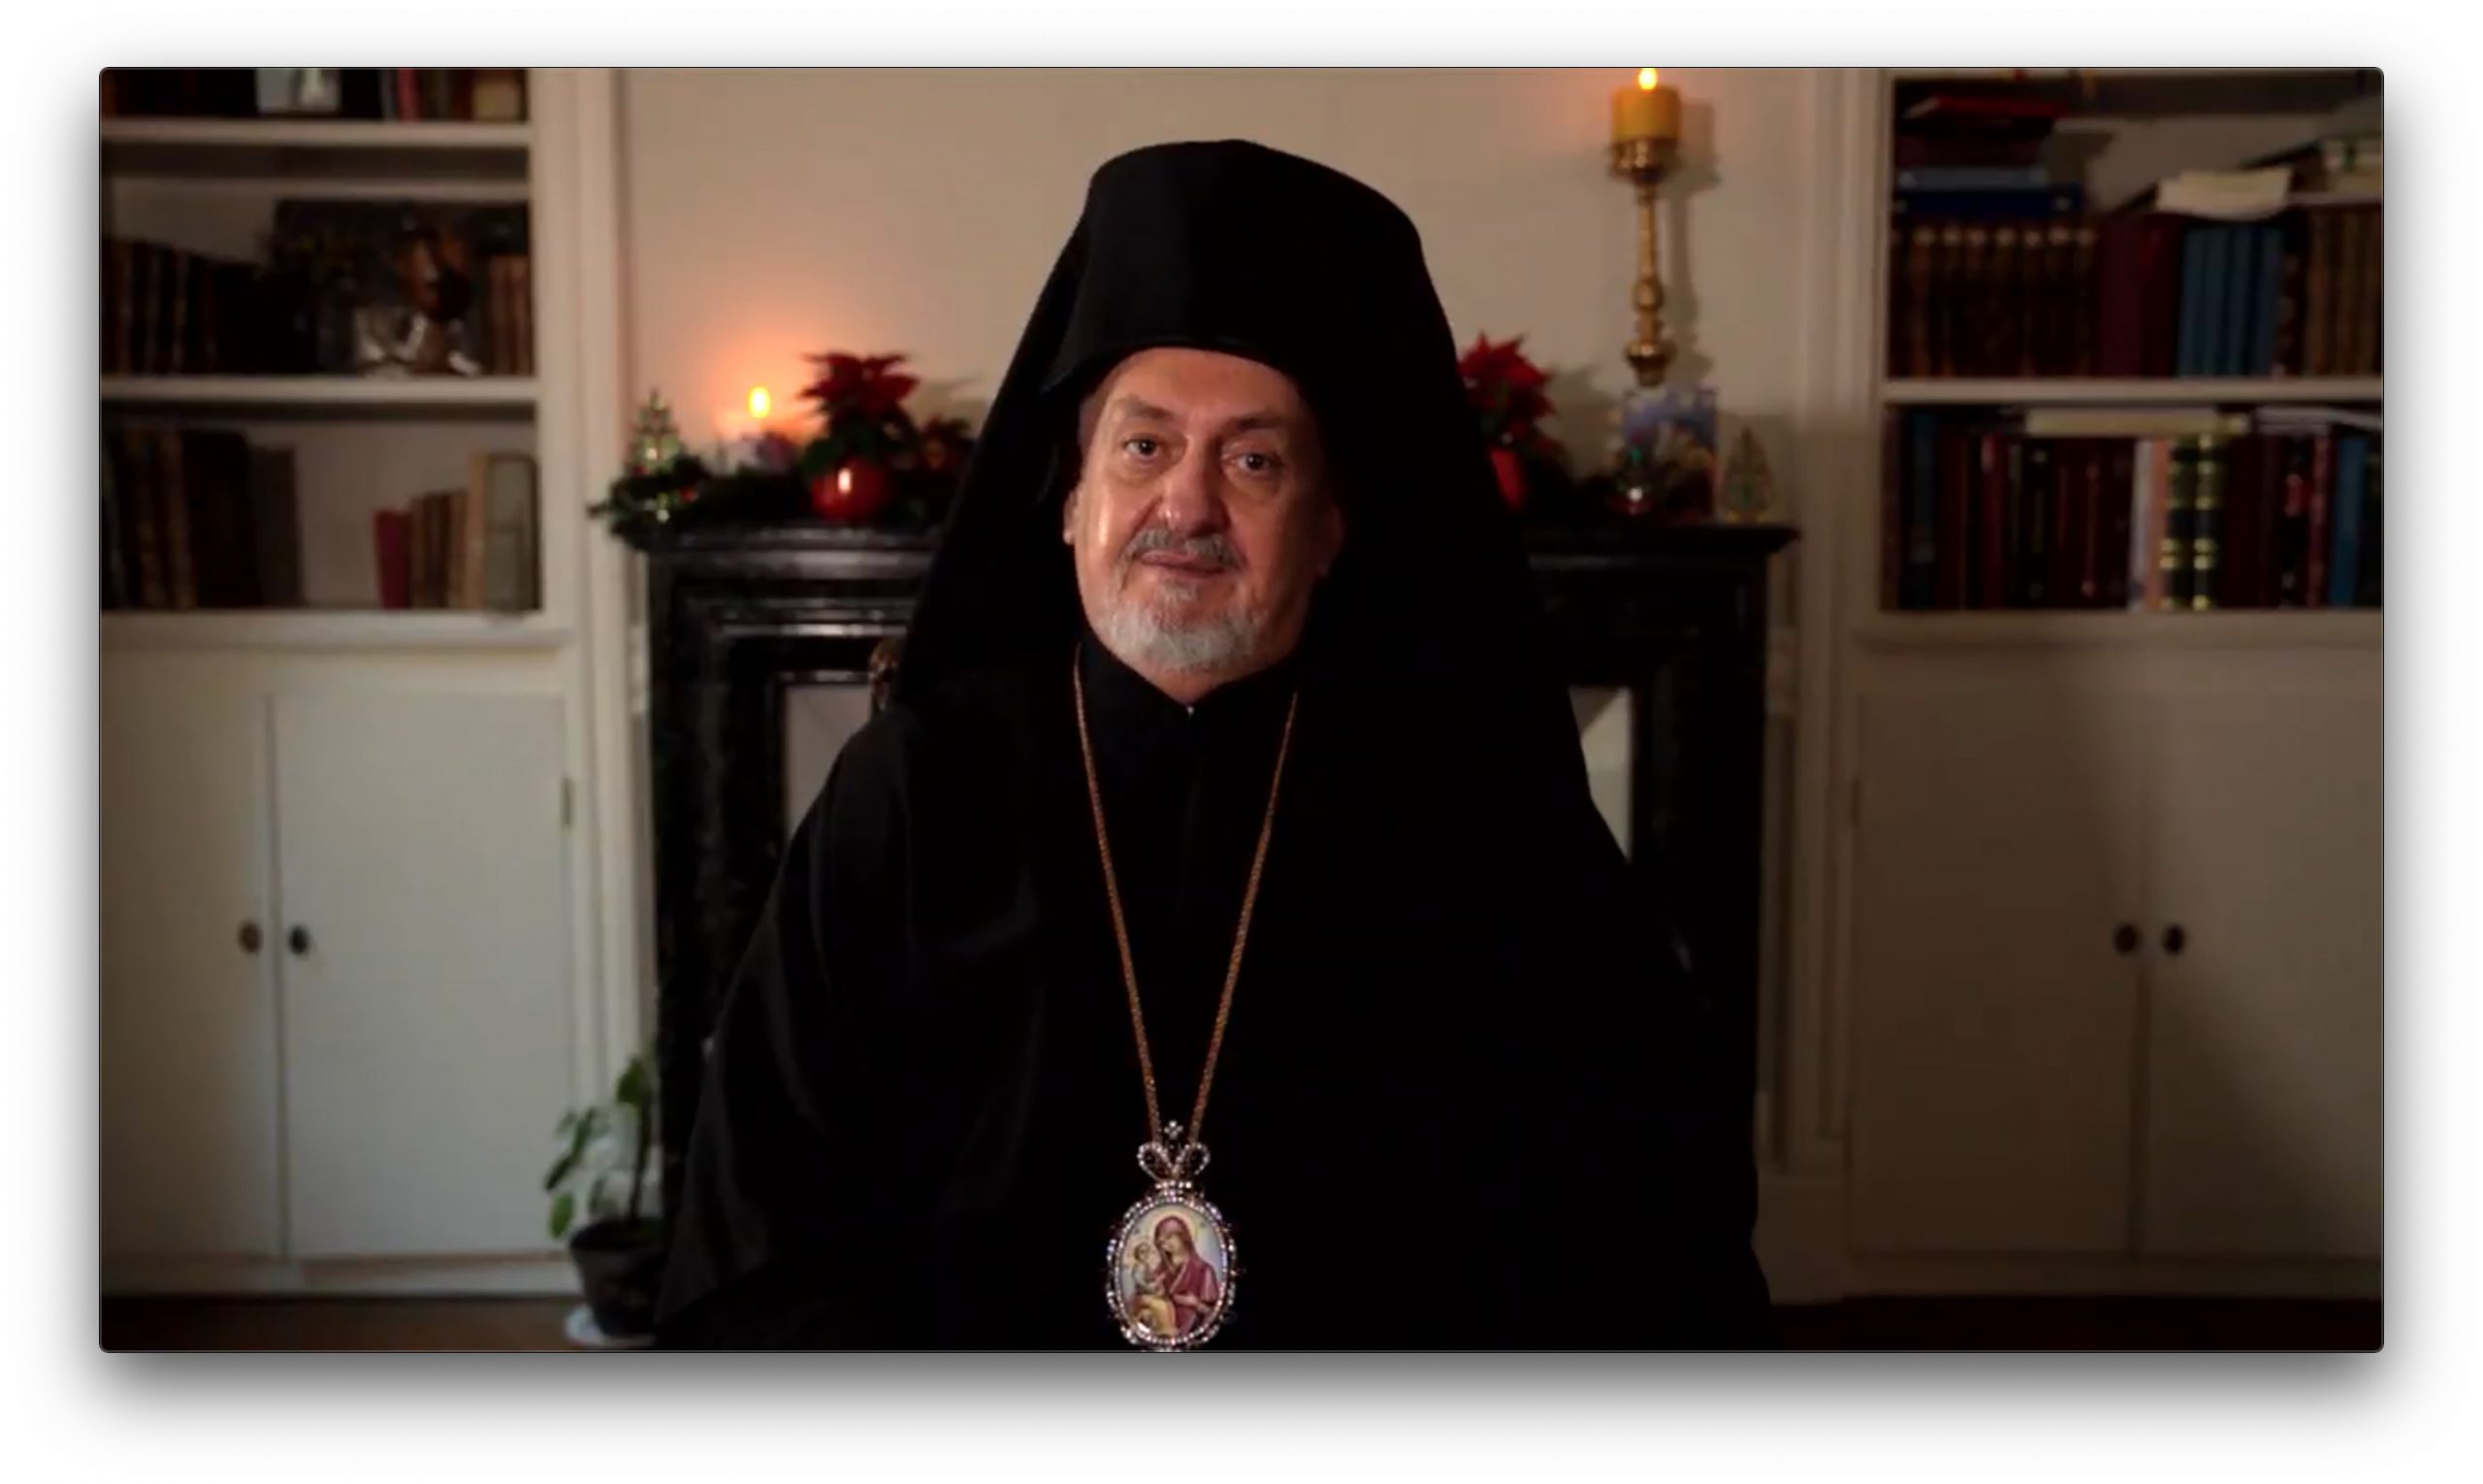 Message de noël de mgr emmanuel de france, président de l’assemblée des évêques orthodoxes de france